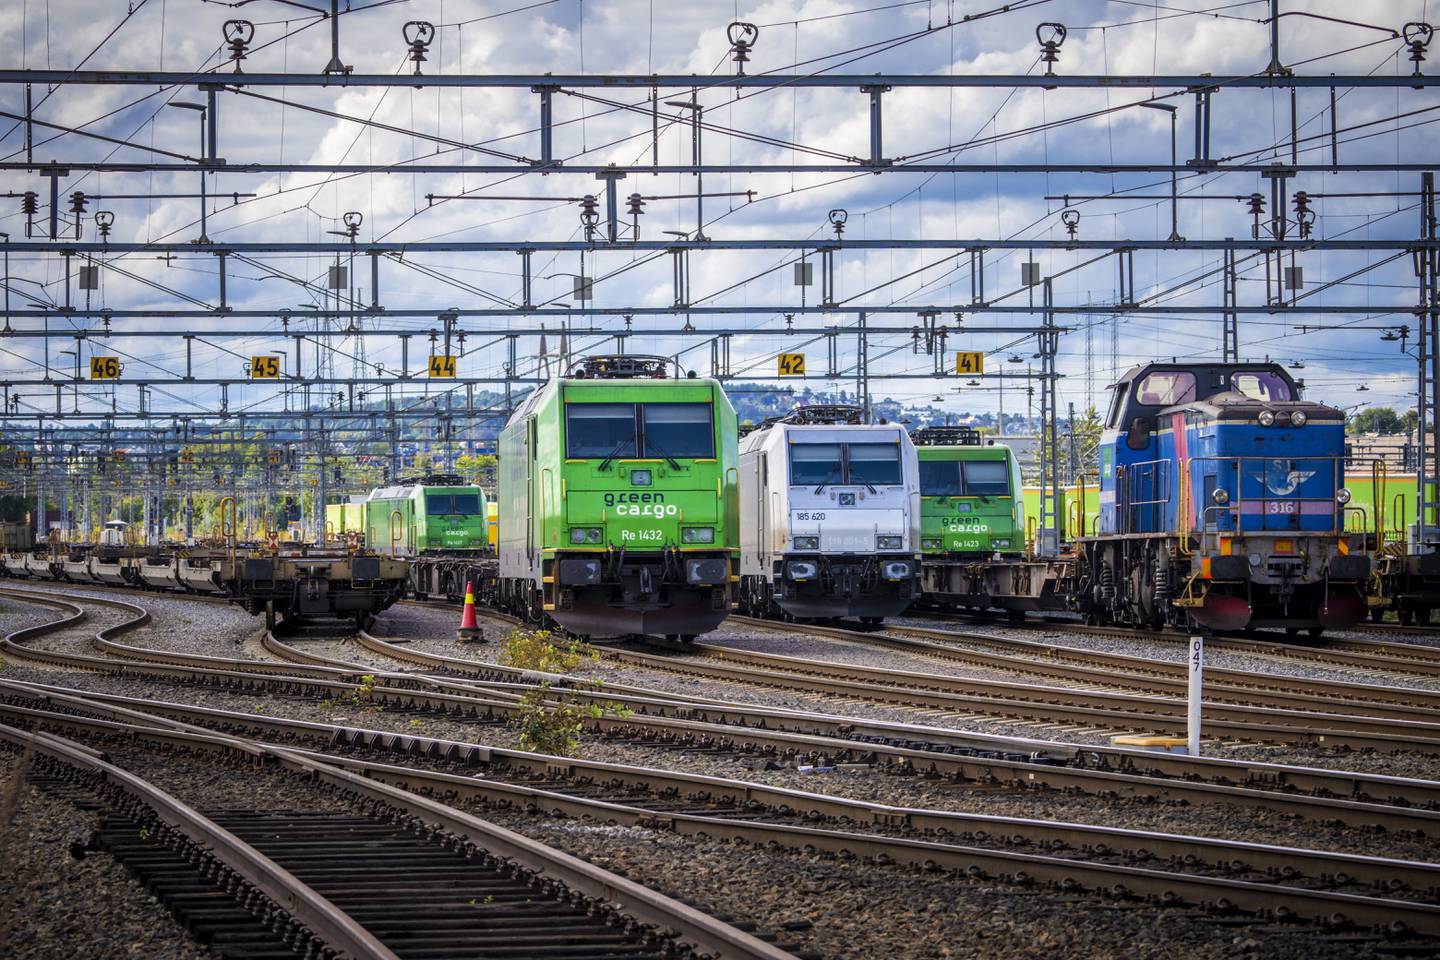 Jernbanen har høy transportevne, og er derfor «en samfunnsmessig viktig funksjon i beredskapssammenheng», påpeker Jernbanedirektoratet. Bilder viser godstog på Alnabruterminalen i Oslo.